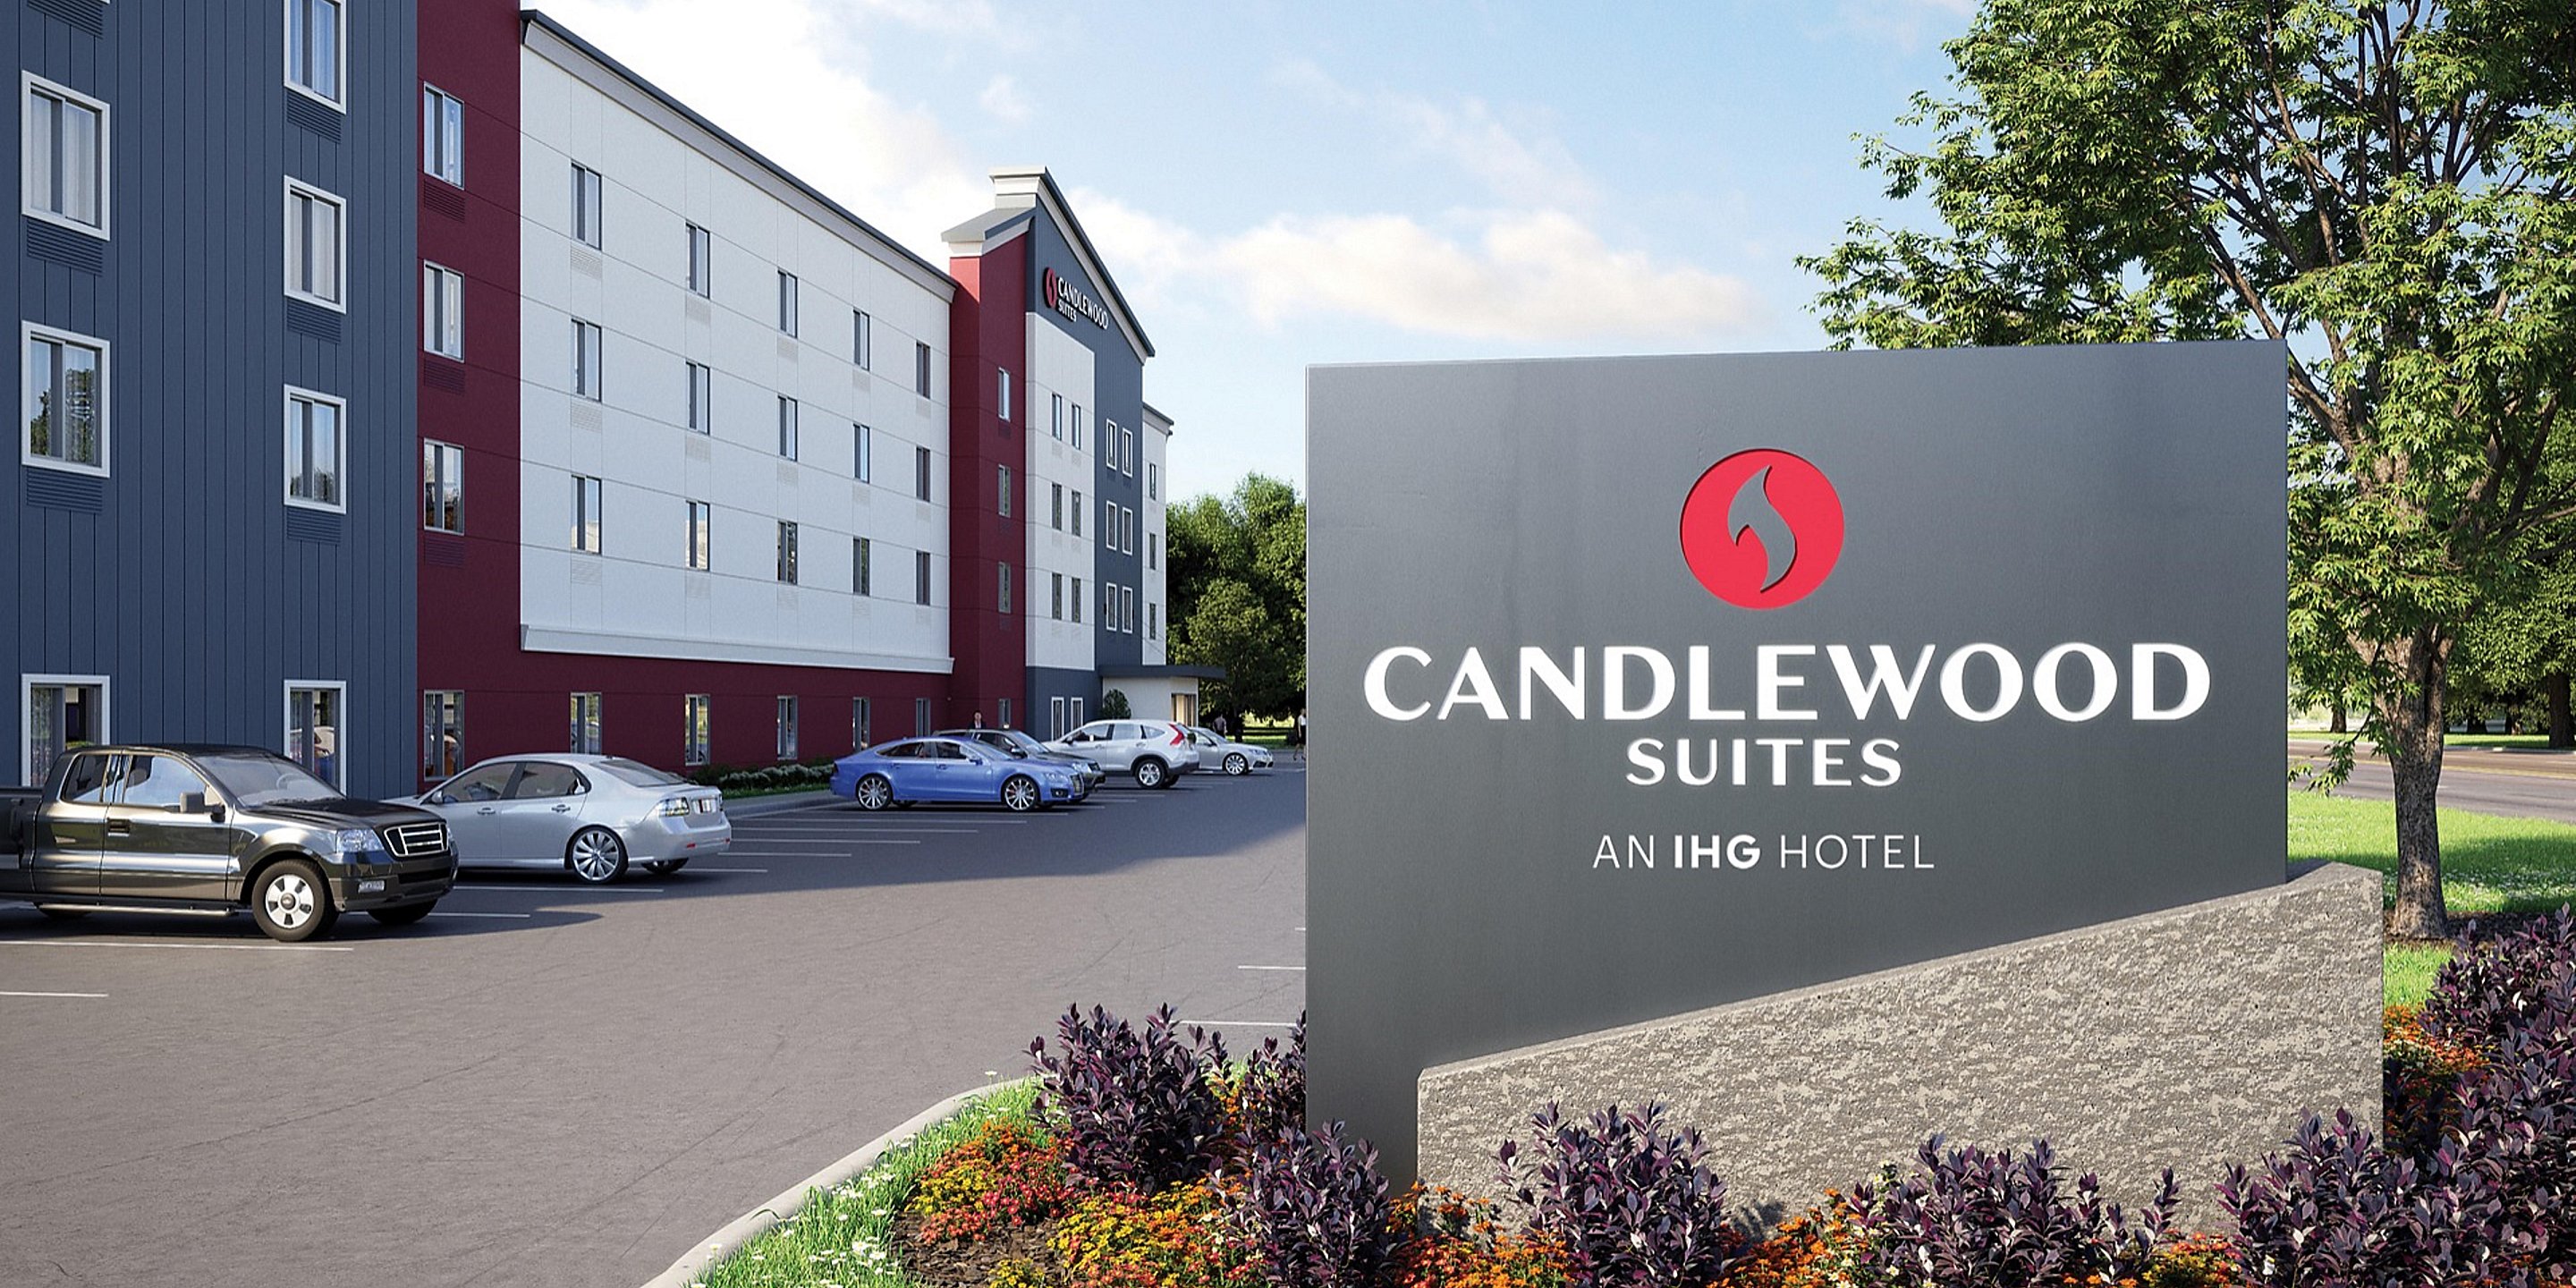 Candlewood Suites Birmingham-Inverness